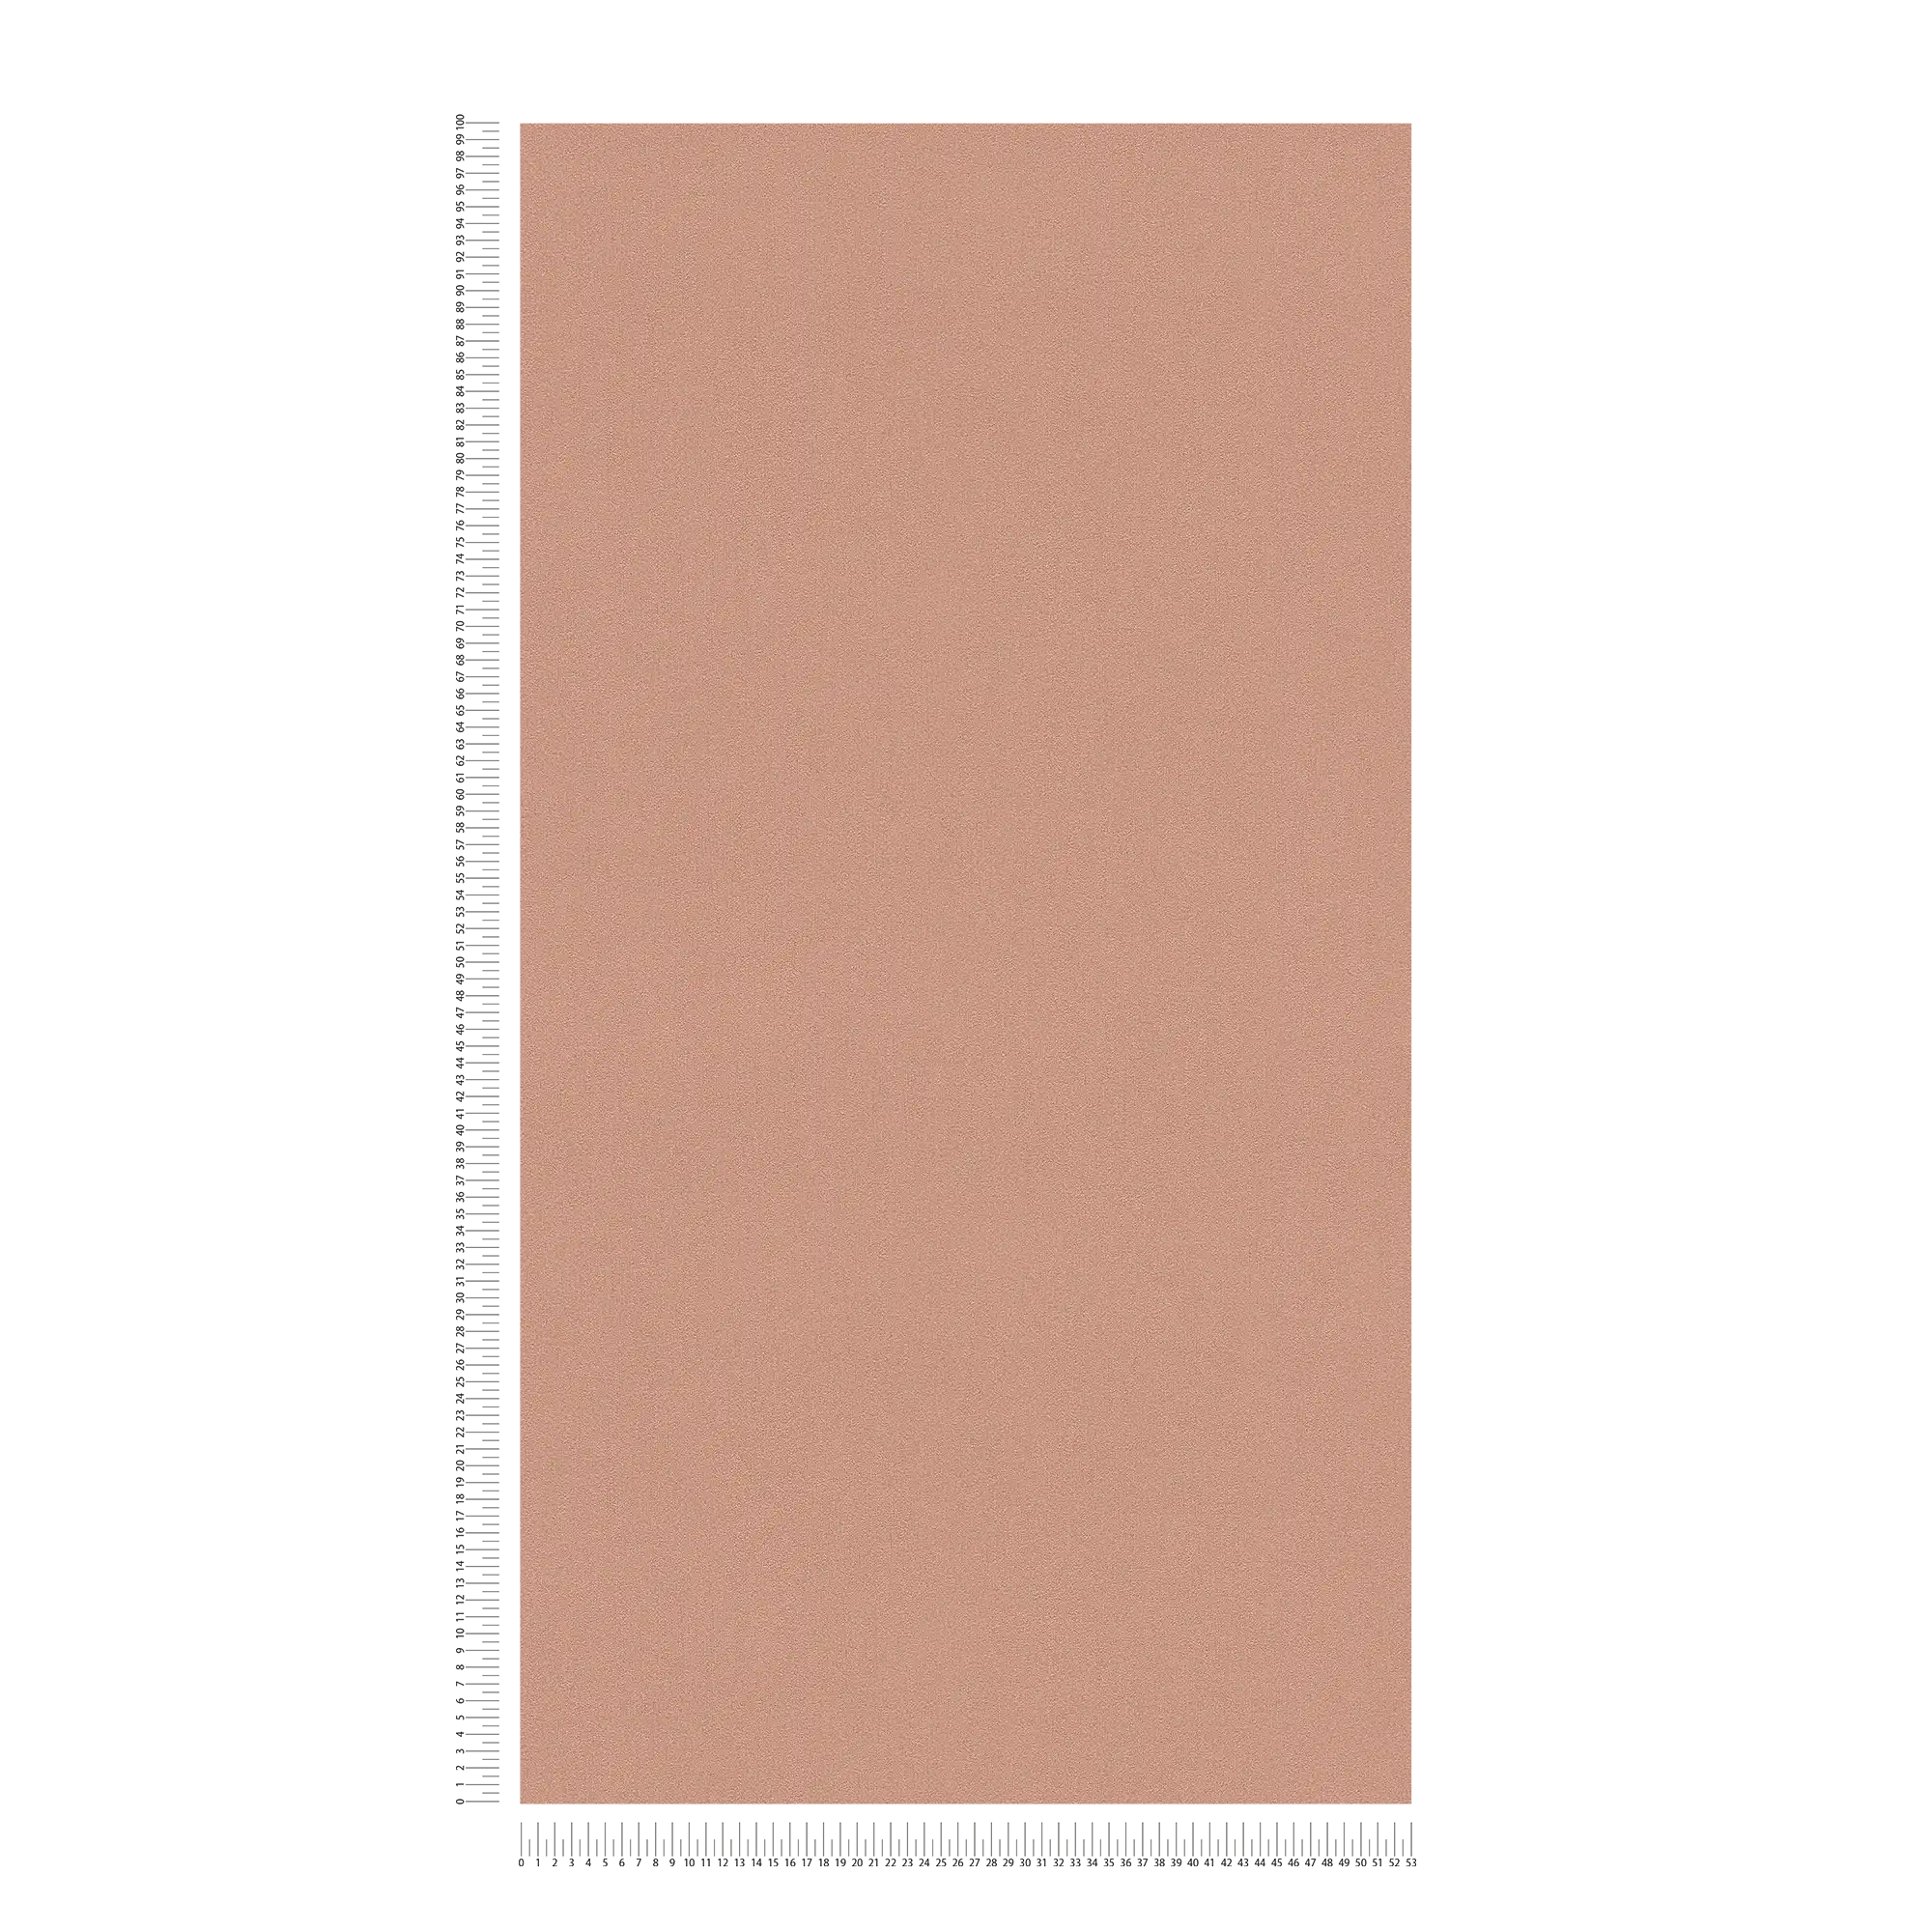             Papel pintado no tejido Karl LAGERFELD liso y con textura - cobre
        